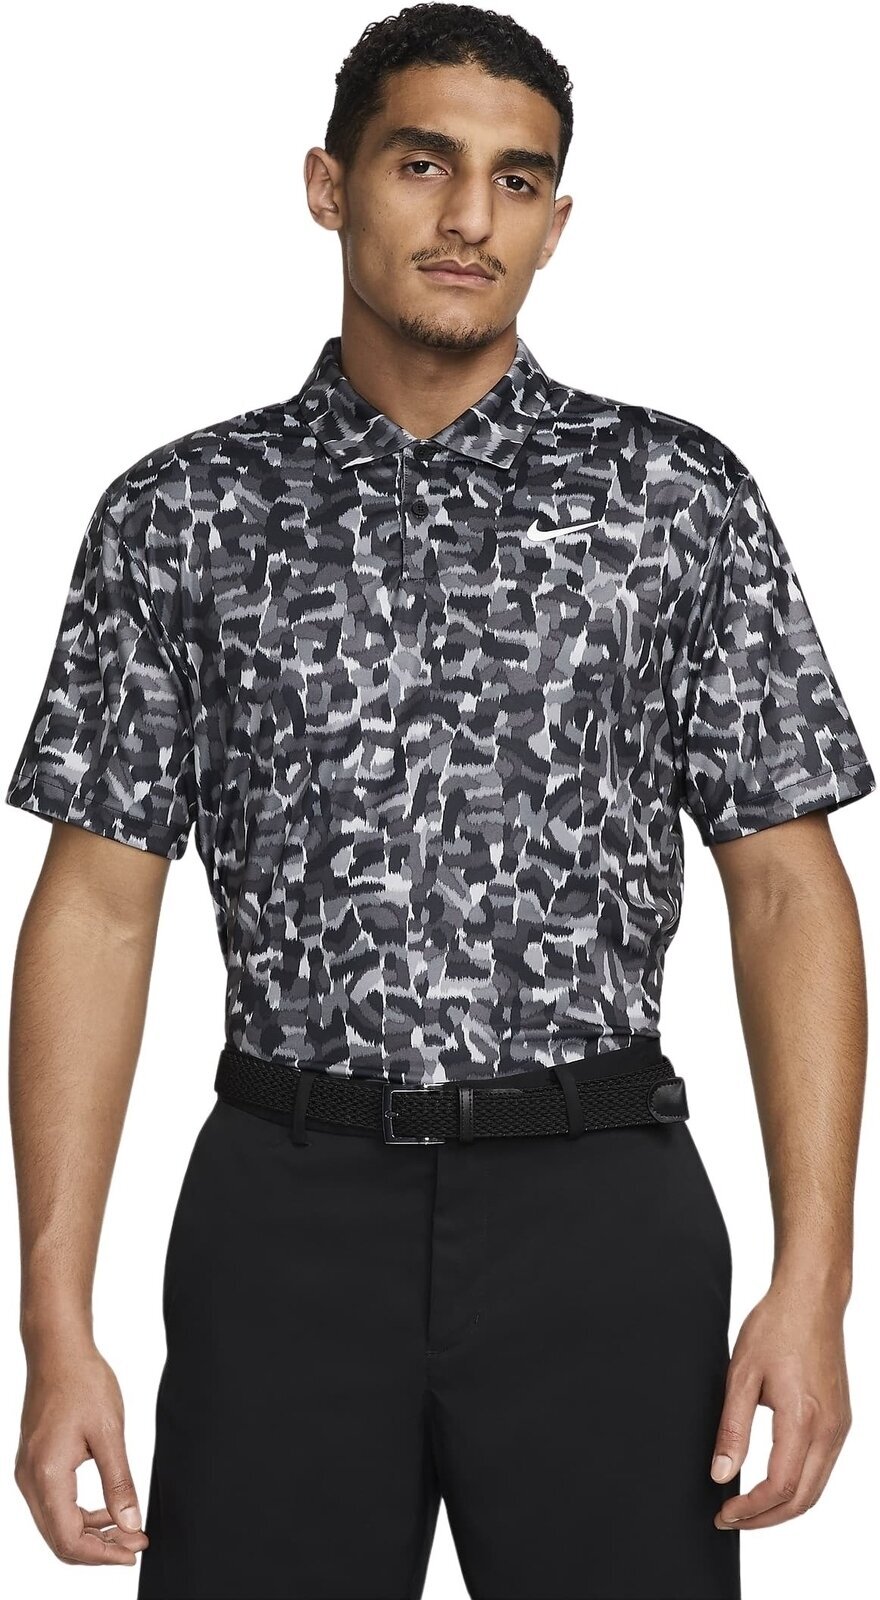 Polo-Shirt Nike Dri-Fit Tour Confetti Print Mens Polo Light Smoke Grey/White M